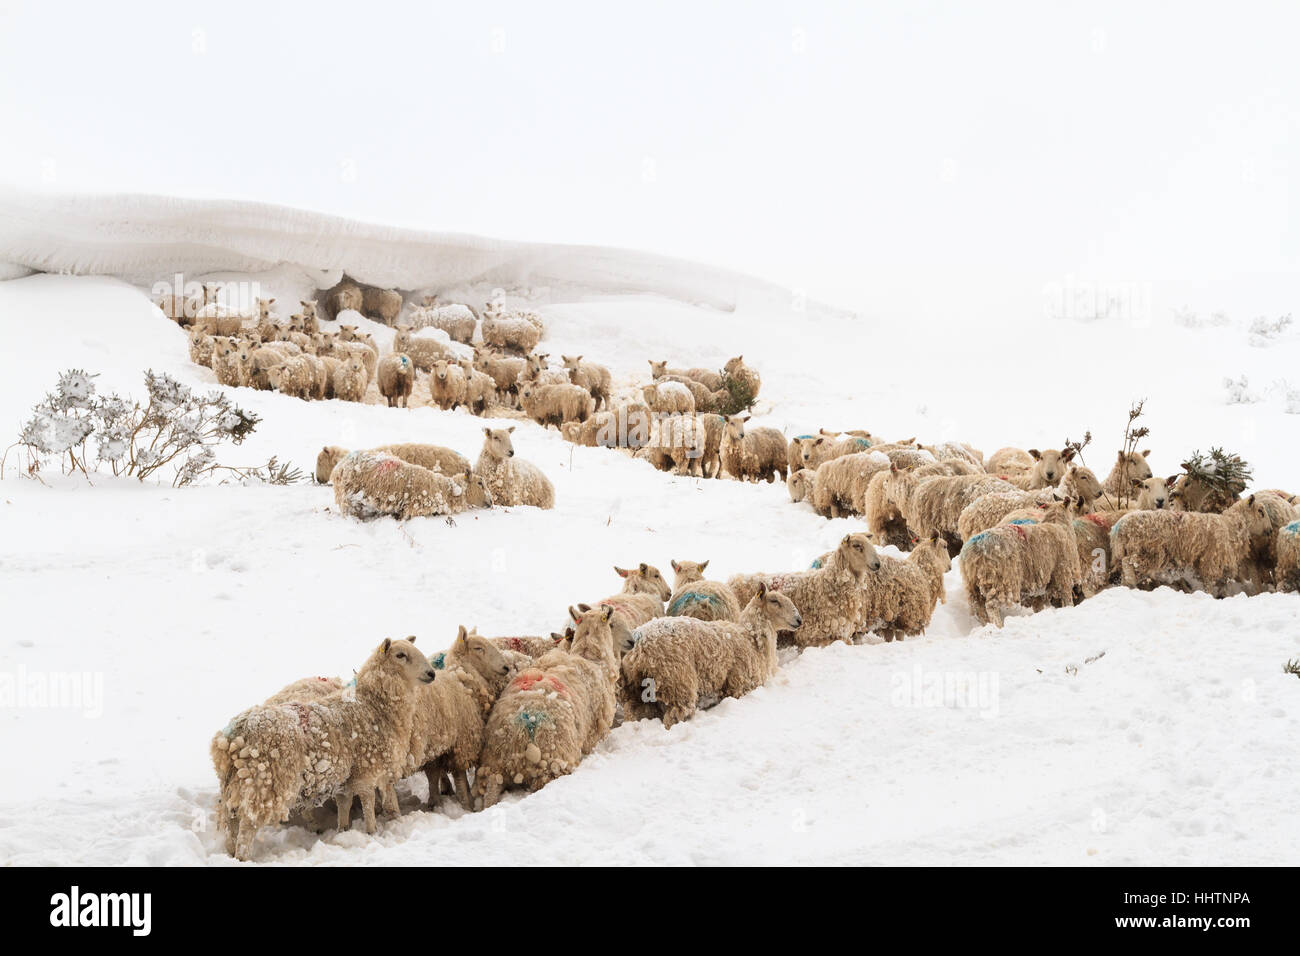 Welsh Mountain gregge di ovini catturati nella neve profonda si sposta durante un inverno di blizzard nel Regno Unito Foto Stock